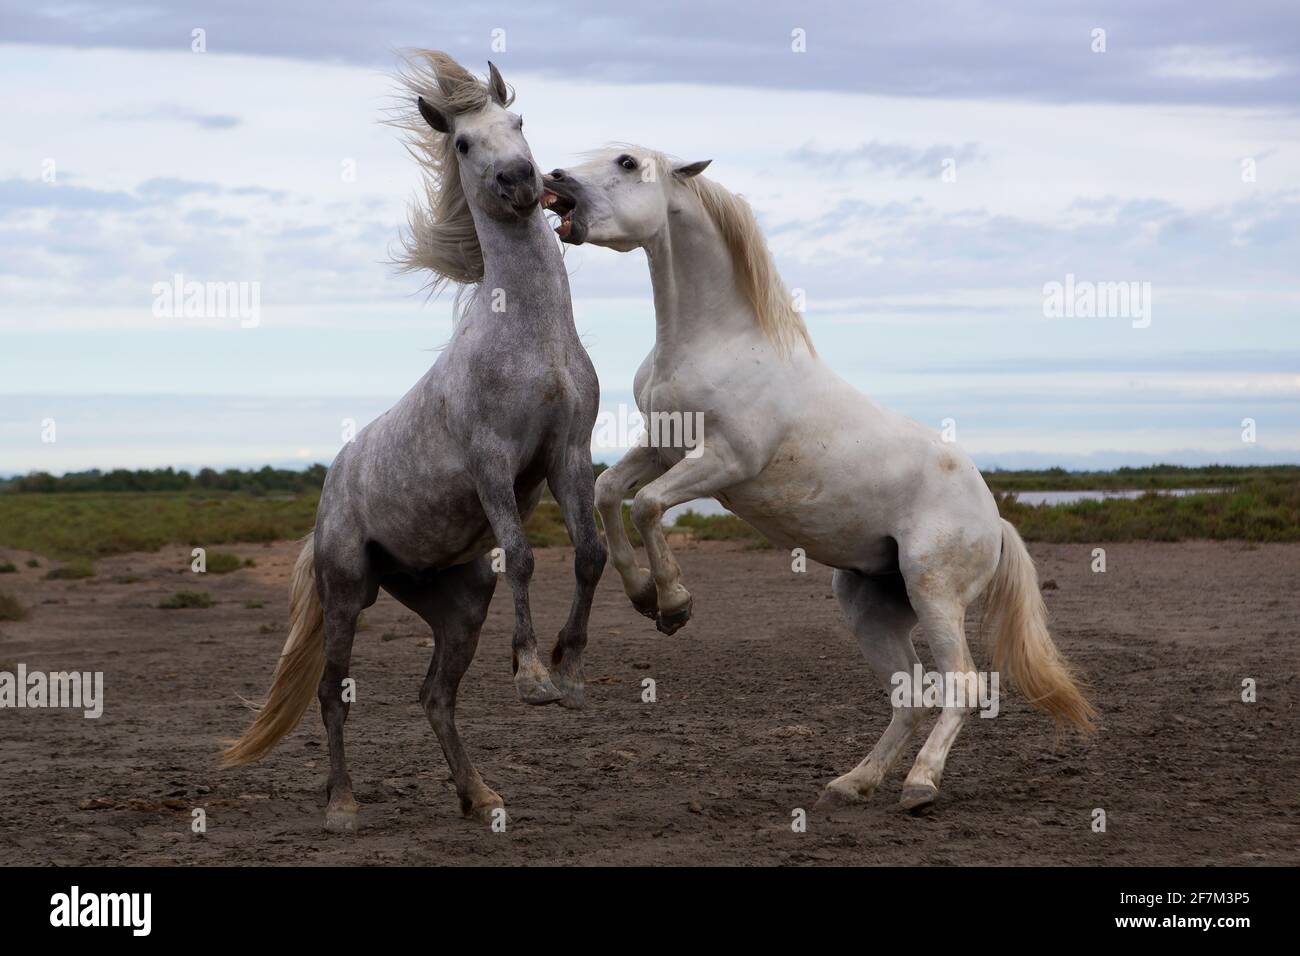 El par de caballos de Camarga la batalan en la costa sur de Francia. CAMARGUE, FRANCIA: El momento ÉPICO en el que se harán dos impresionantes sementales para determinar quién Foto de stock